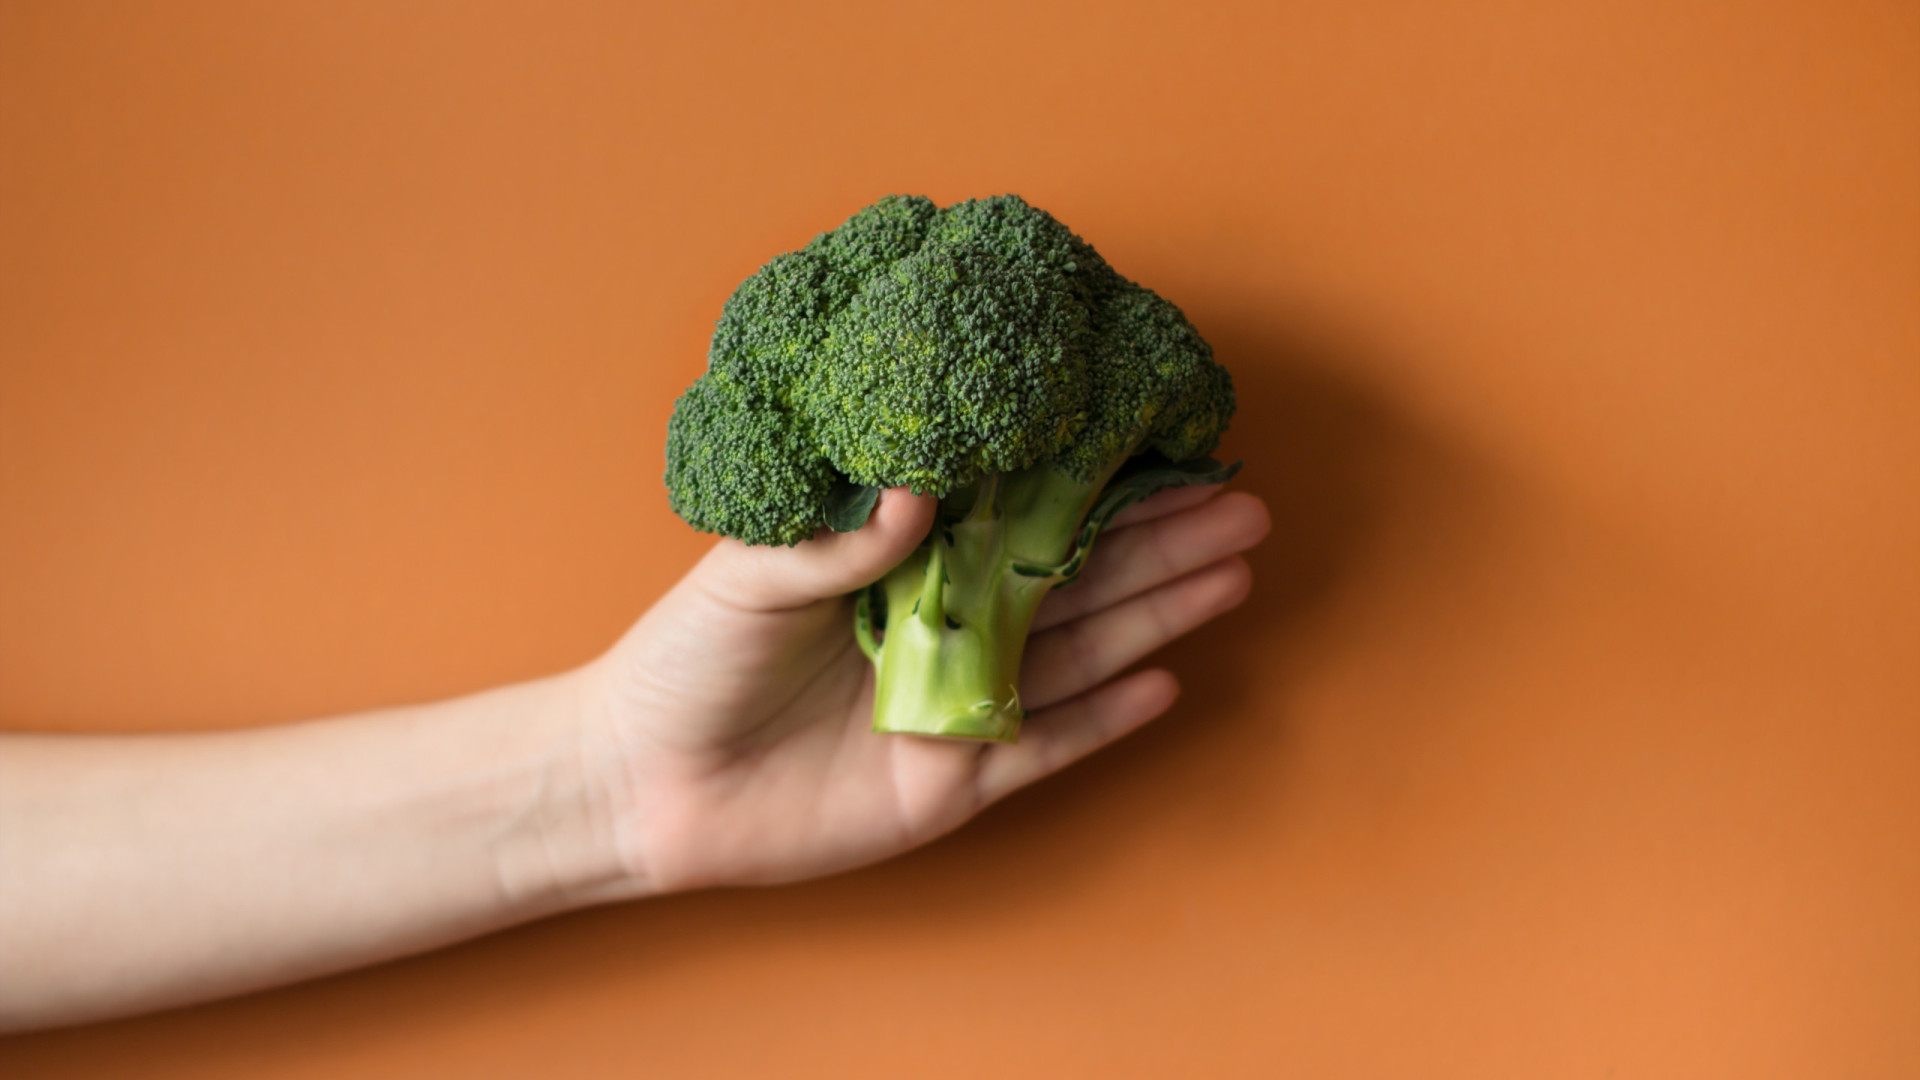 Quer turbinar a saúde do seu intestino? Aposte no brócolis!